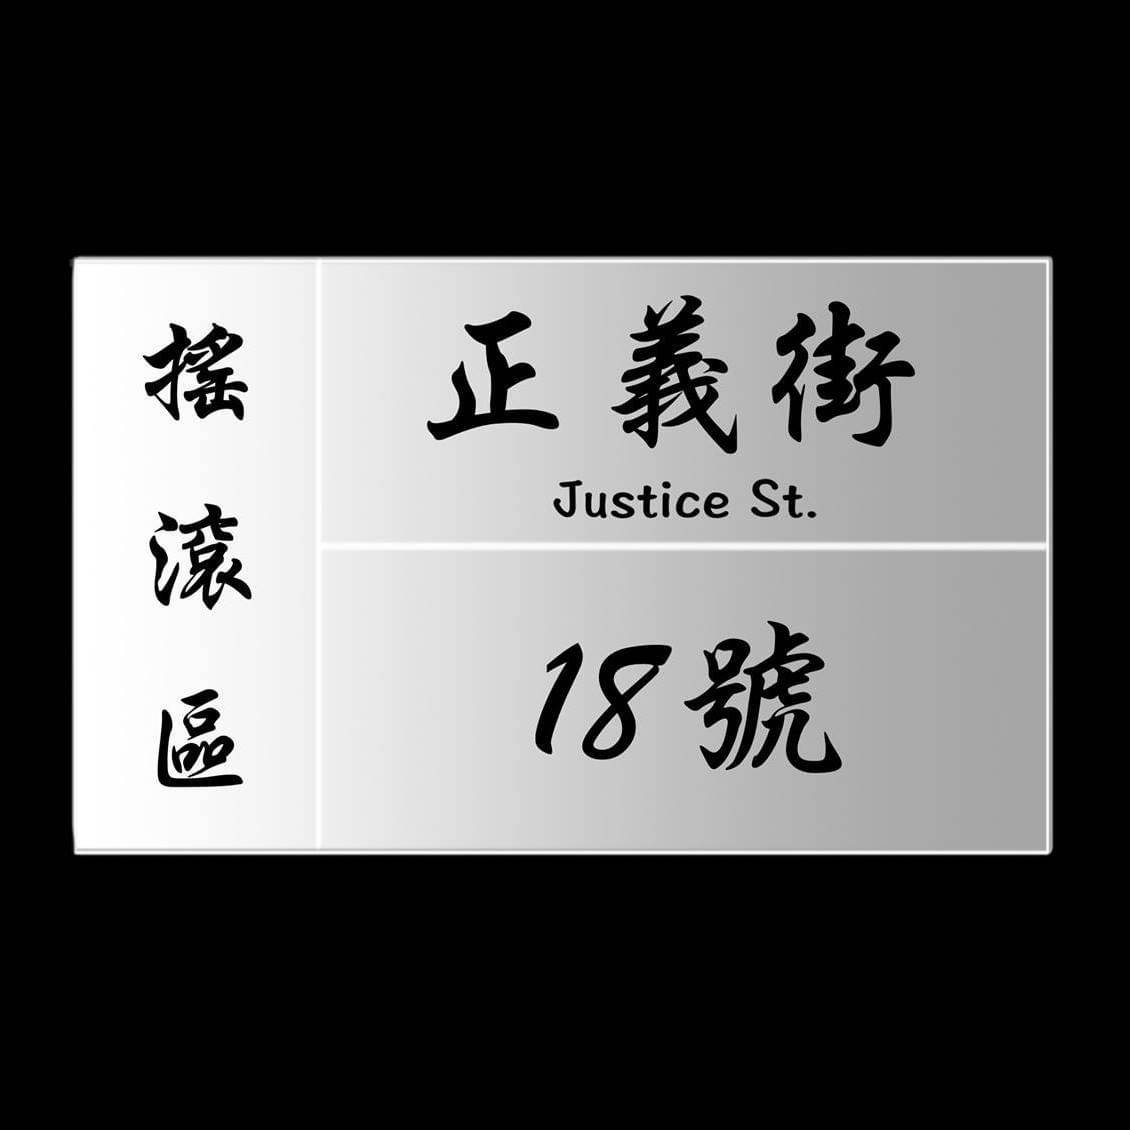 正義街 Justice St.